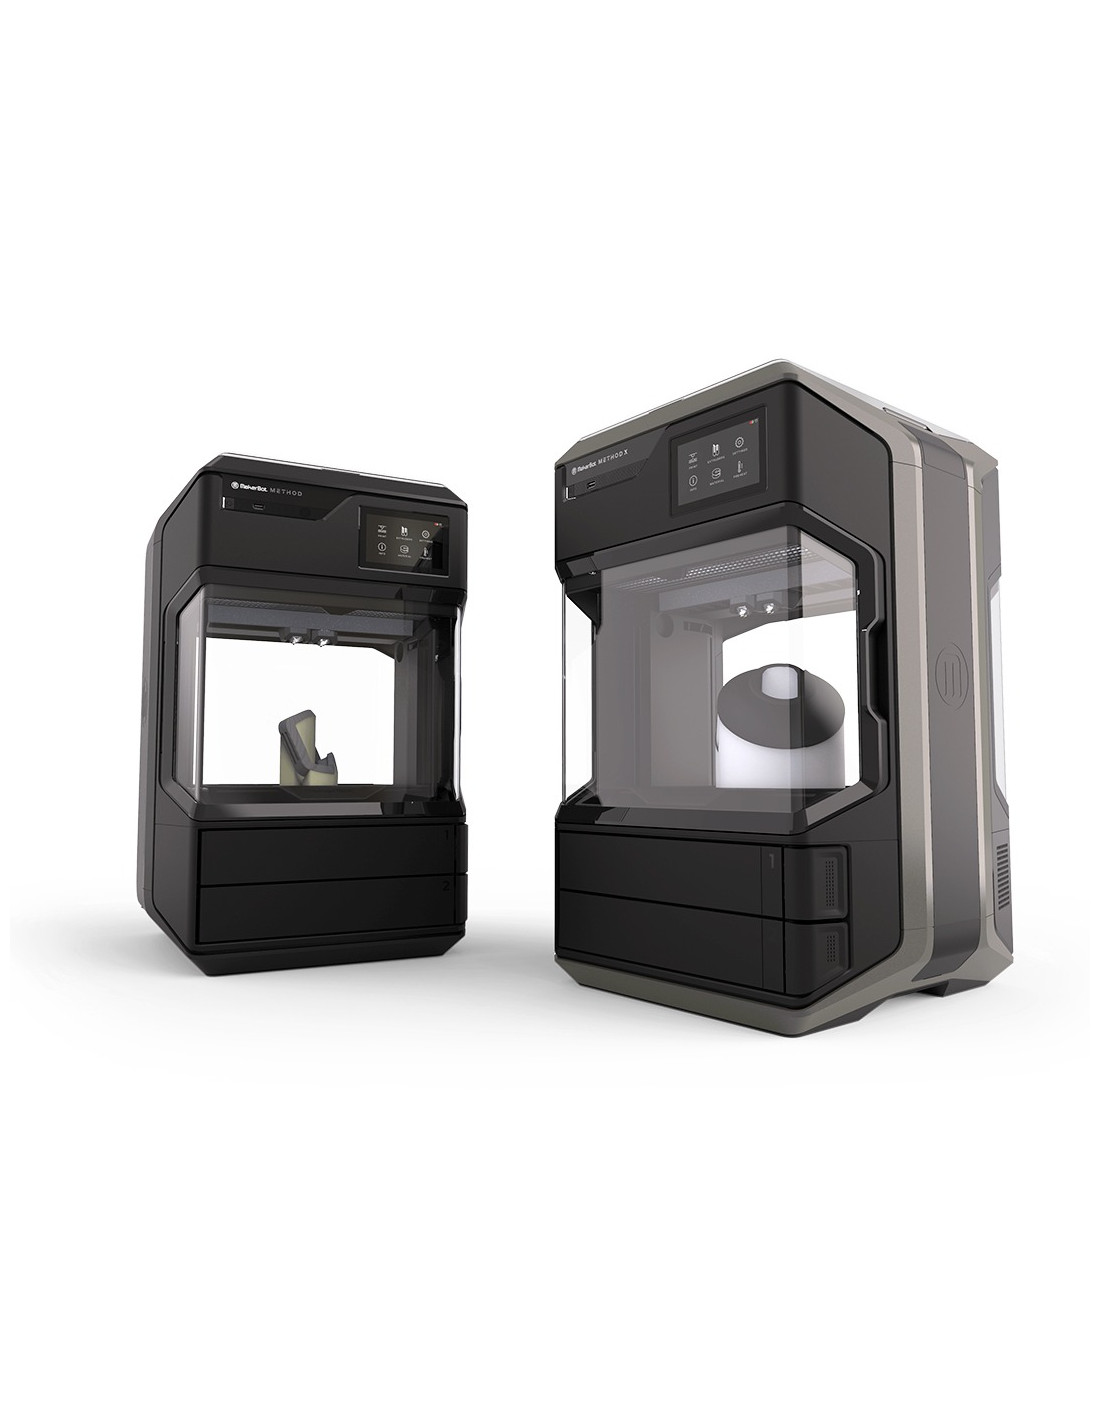 Imprimante 3D Makerbot Method